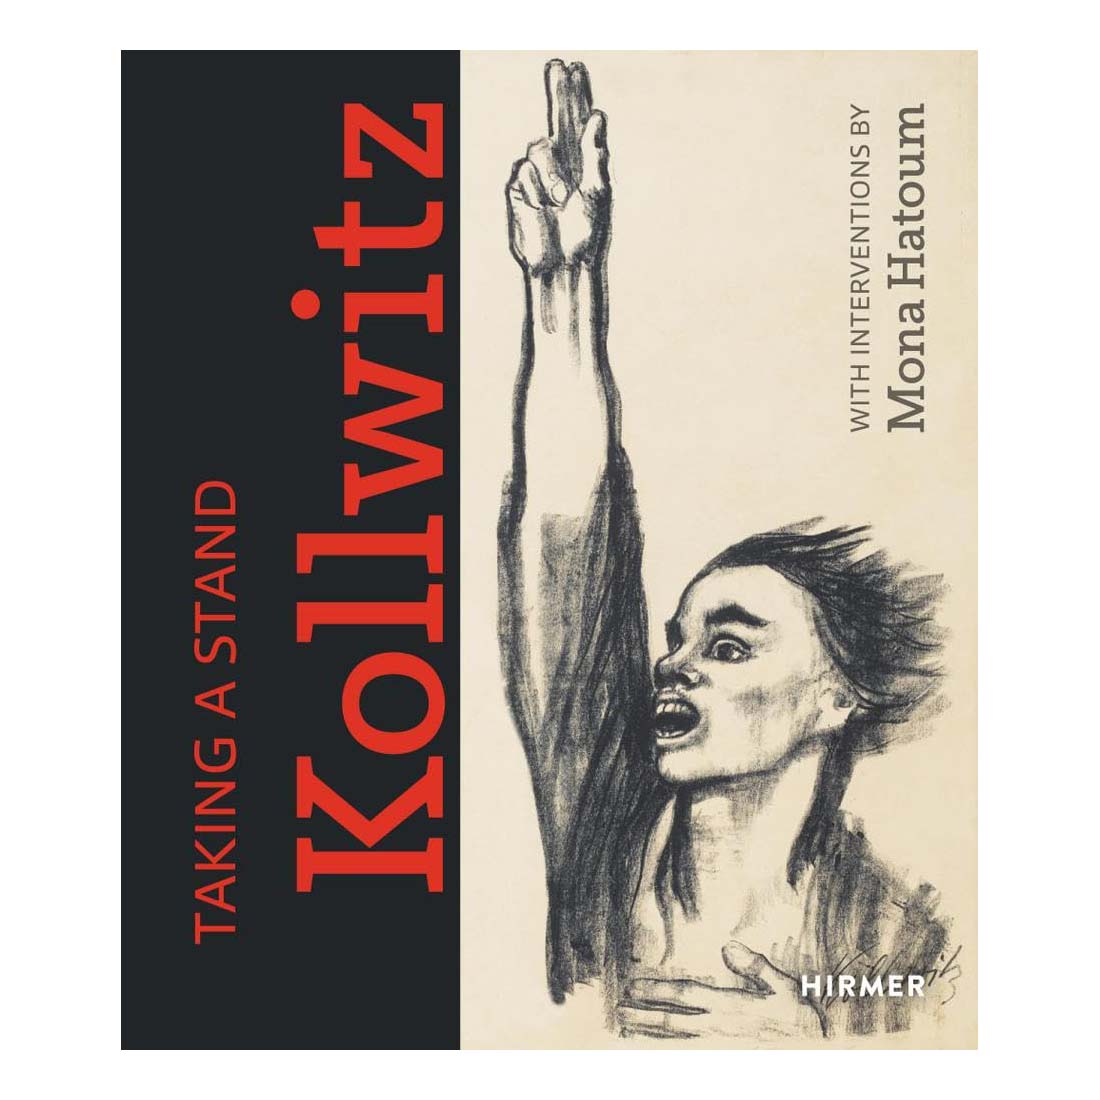 Taking a Stand: Kollwitz